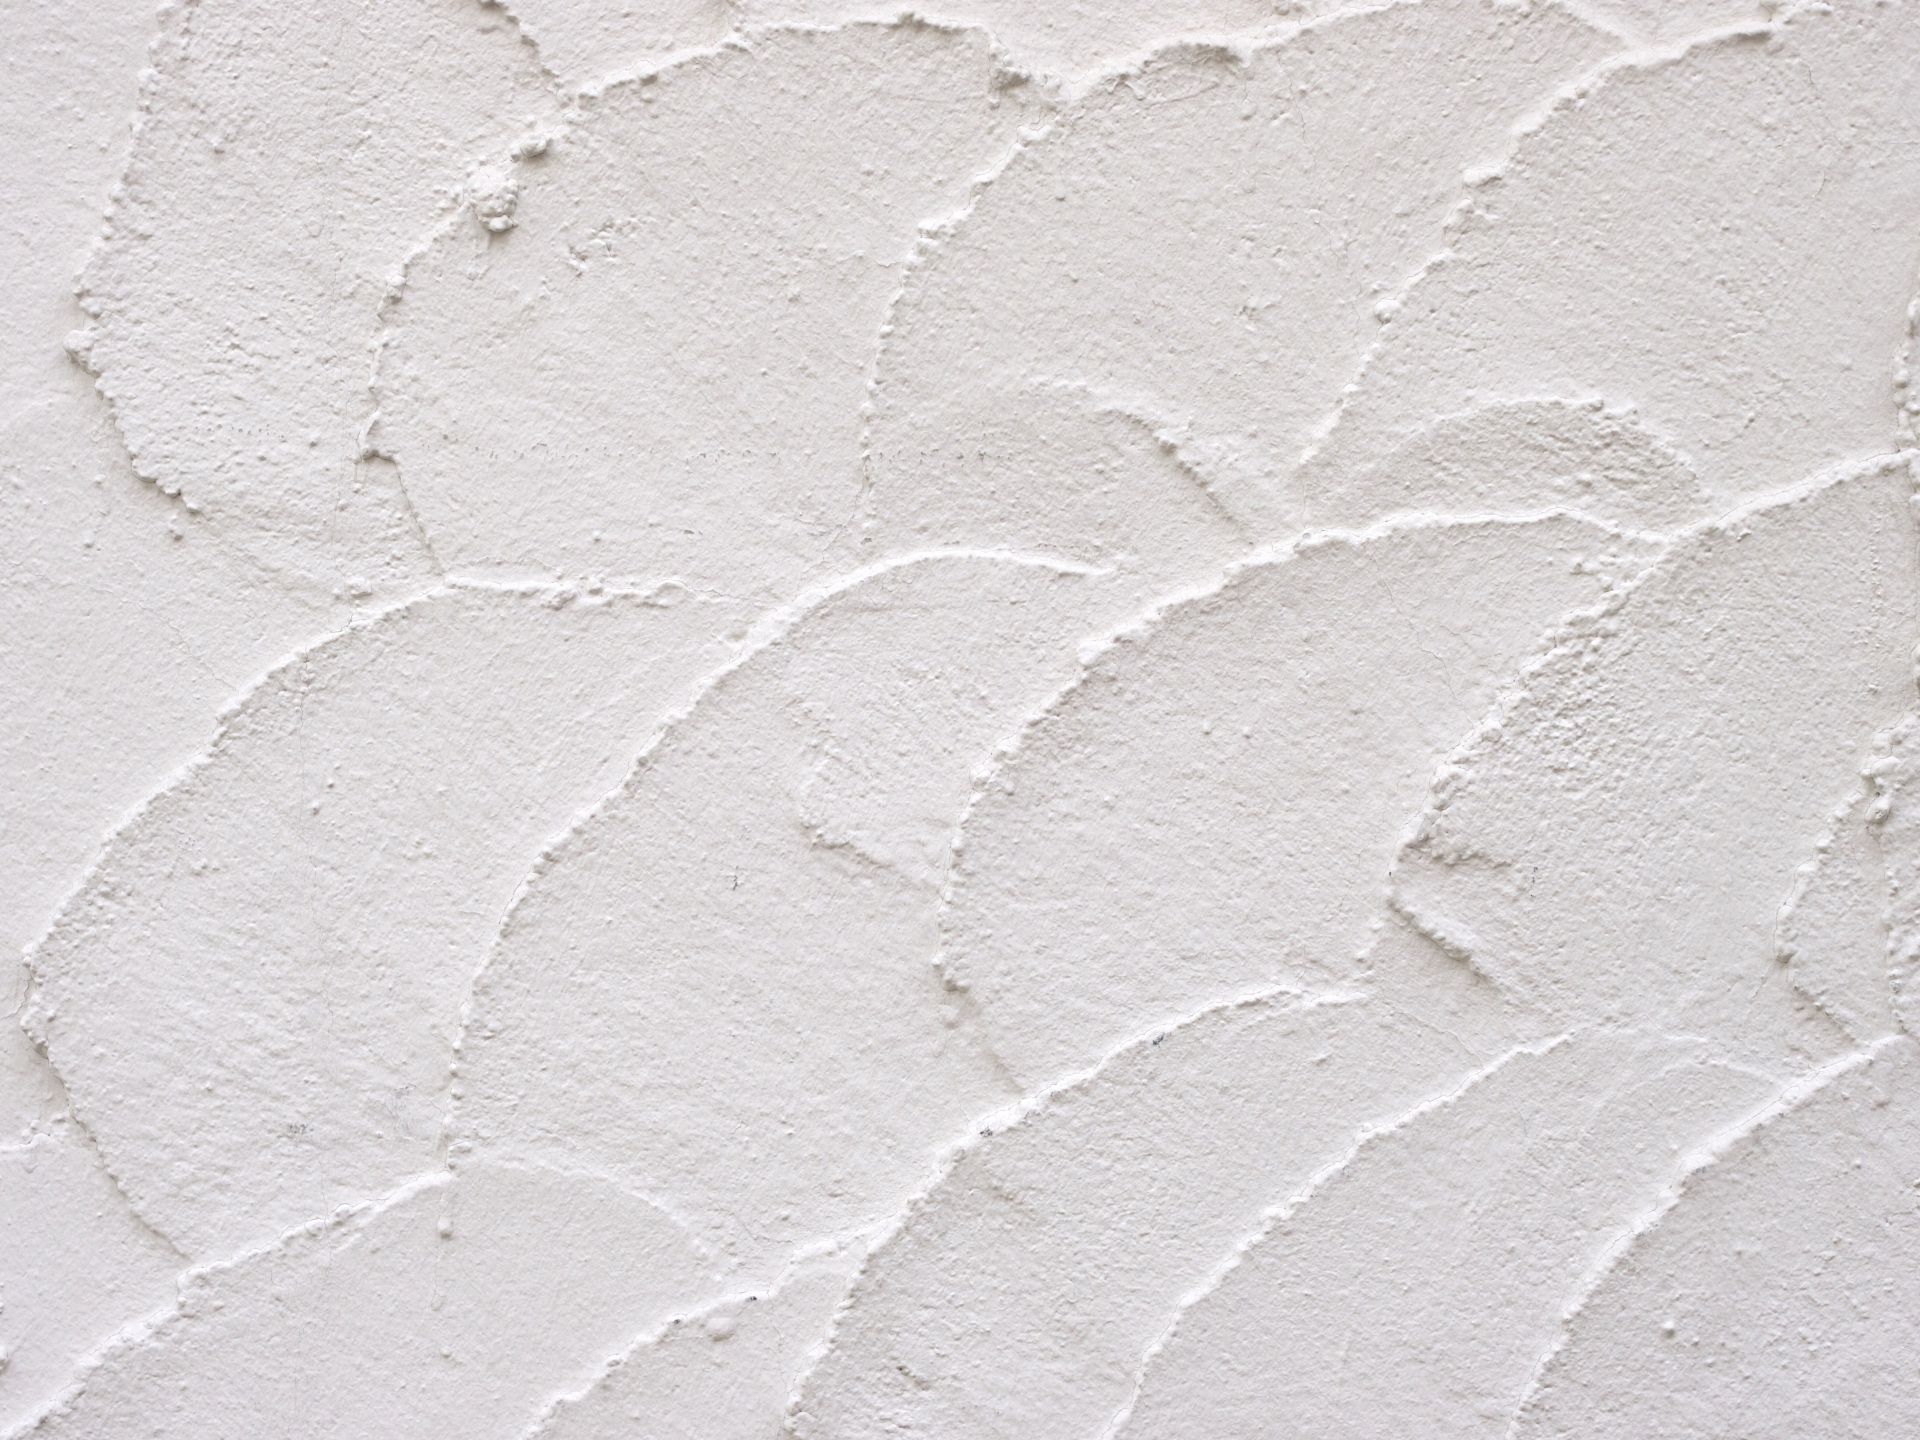 【ふだんの掃除/念入り掃除】漆喰壁のお掃除方法の解説